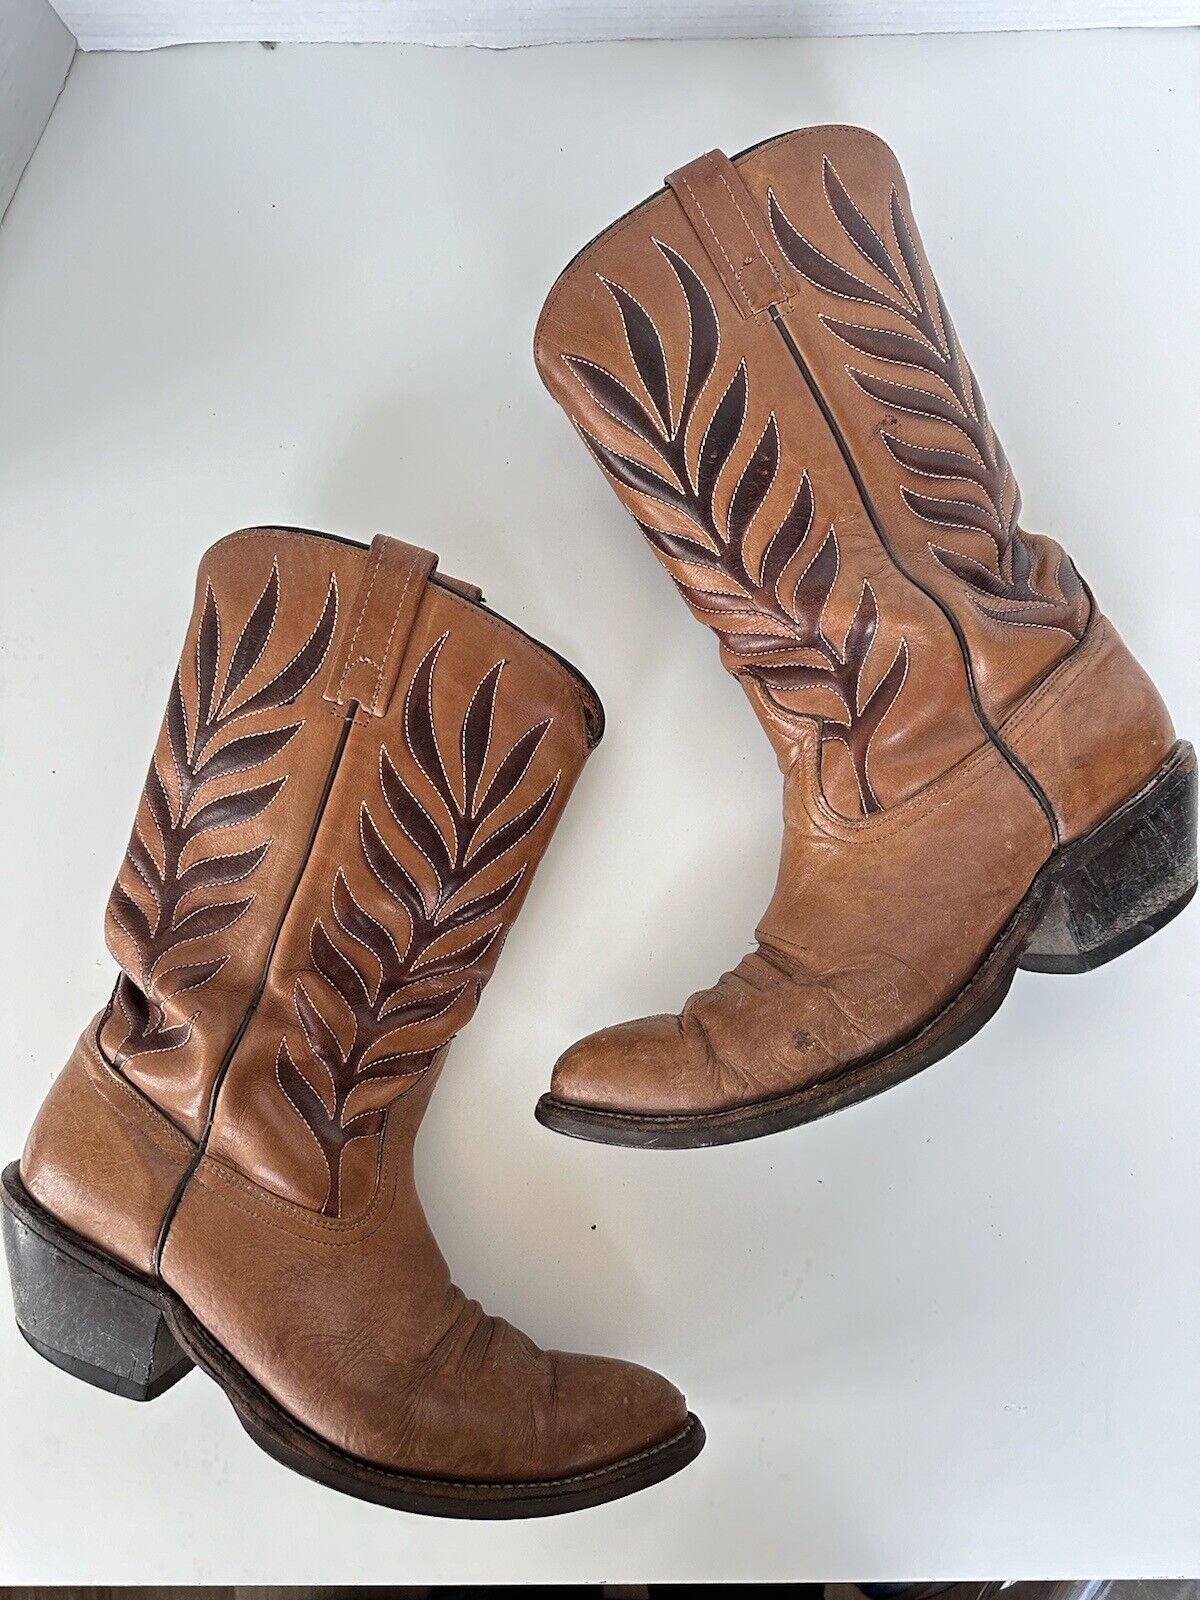 Vintage Acme Leather Tan Men’s Cowboy Western Boots Size 9.5